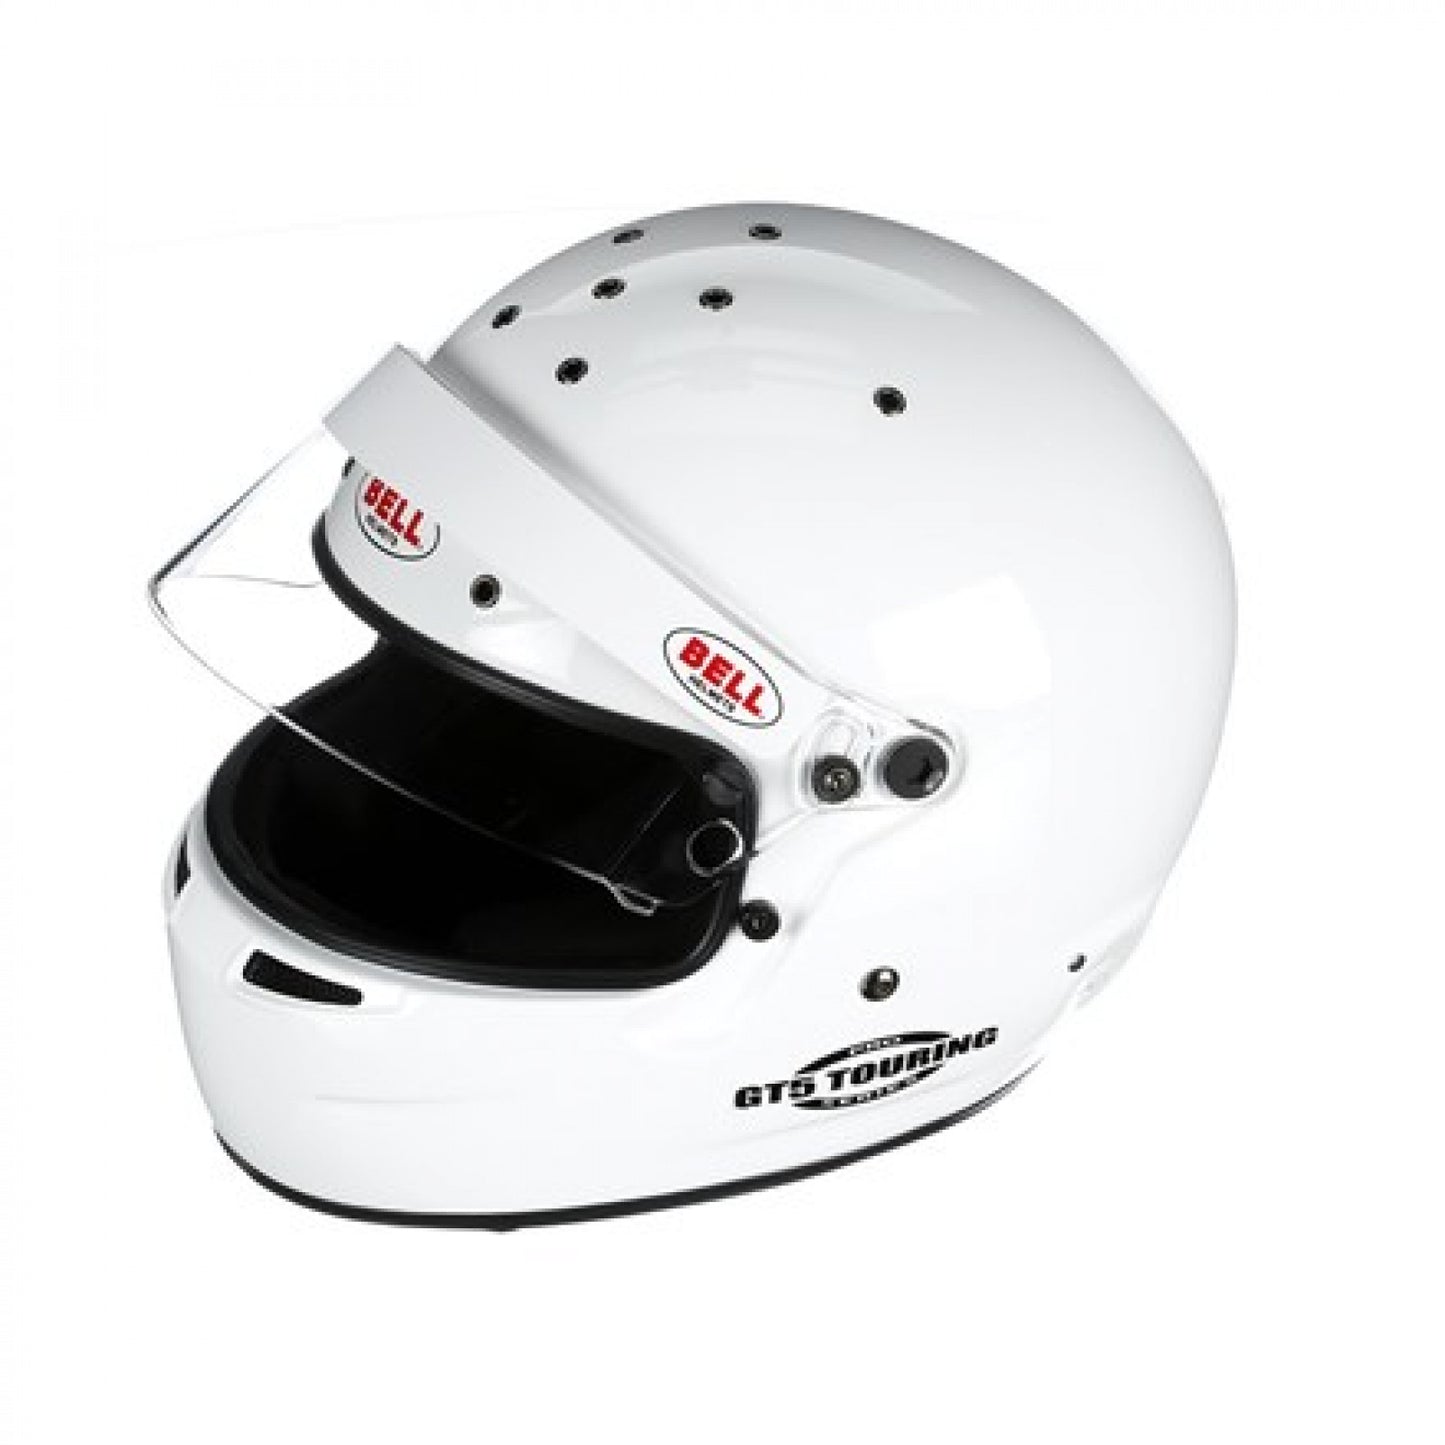 Bell GT5 Touring Helmet Medium White 58-59 cm '1315002